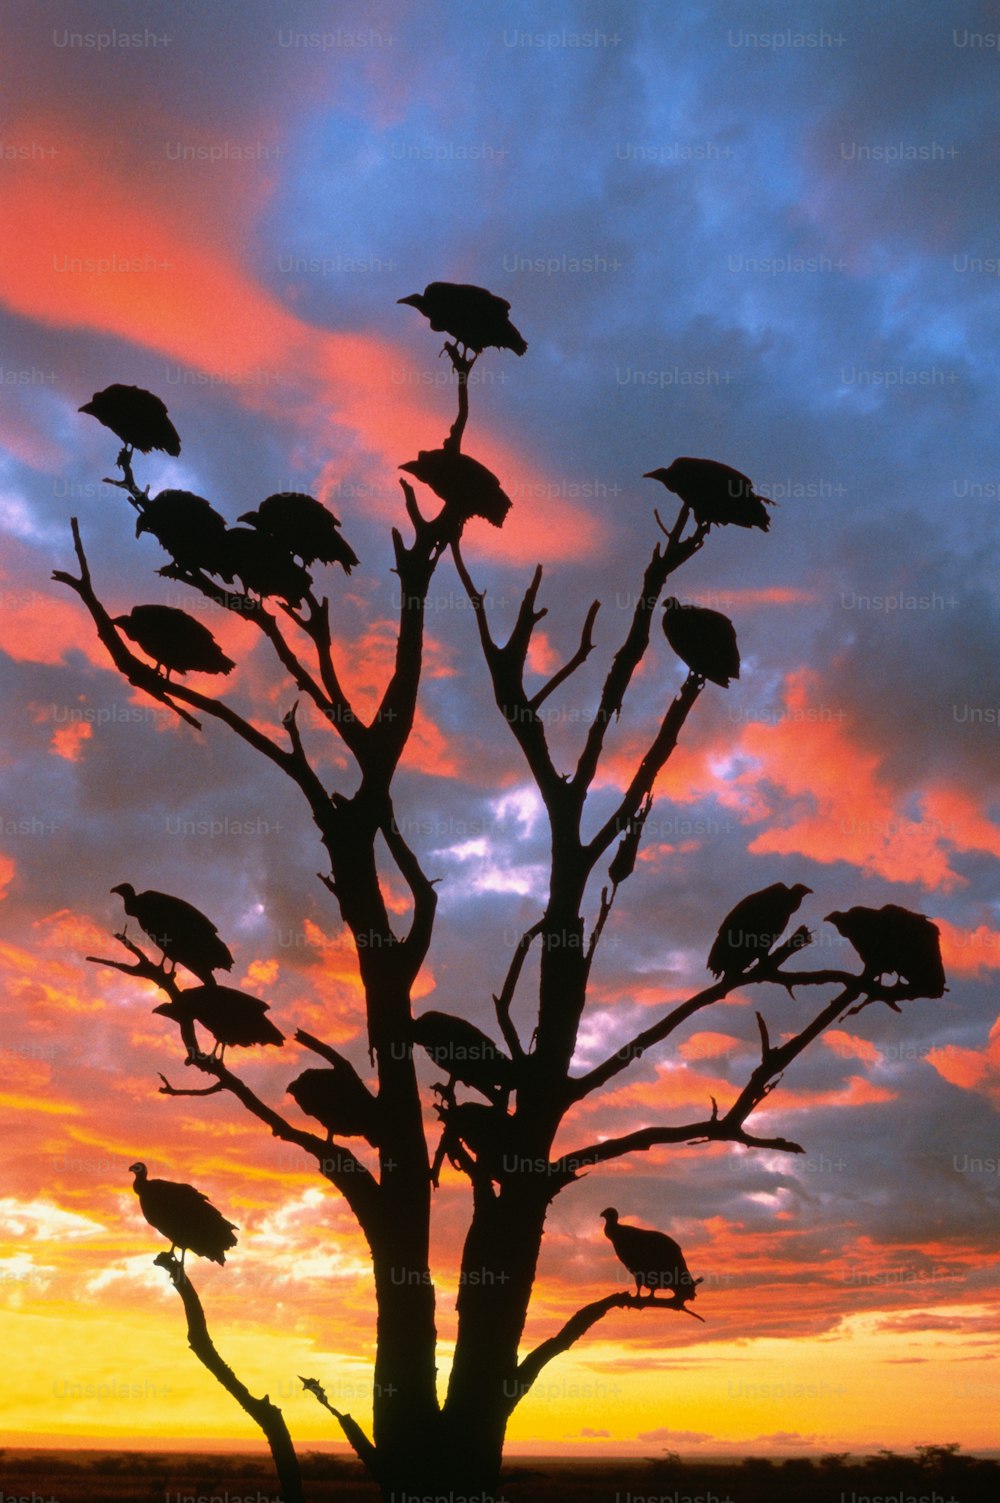 Parc national Kruger, Afrique du Sud. Les vautours sont de grands oiseaux à la tête nue et au bec crochu. Ce sont des charognards qui se nourrissent de la charogne laissée par d’autres prédateurs. La plupart des espèces n’ont pas d’odorat, elles chassent donc à vue.